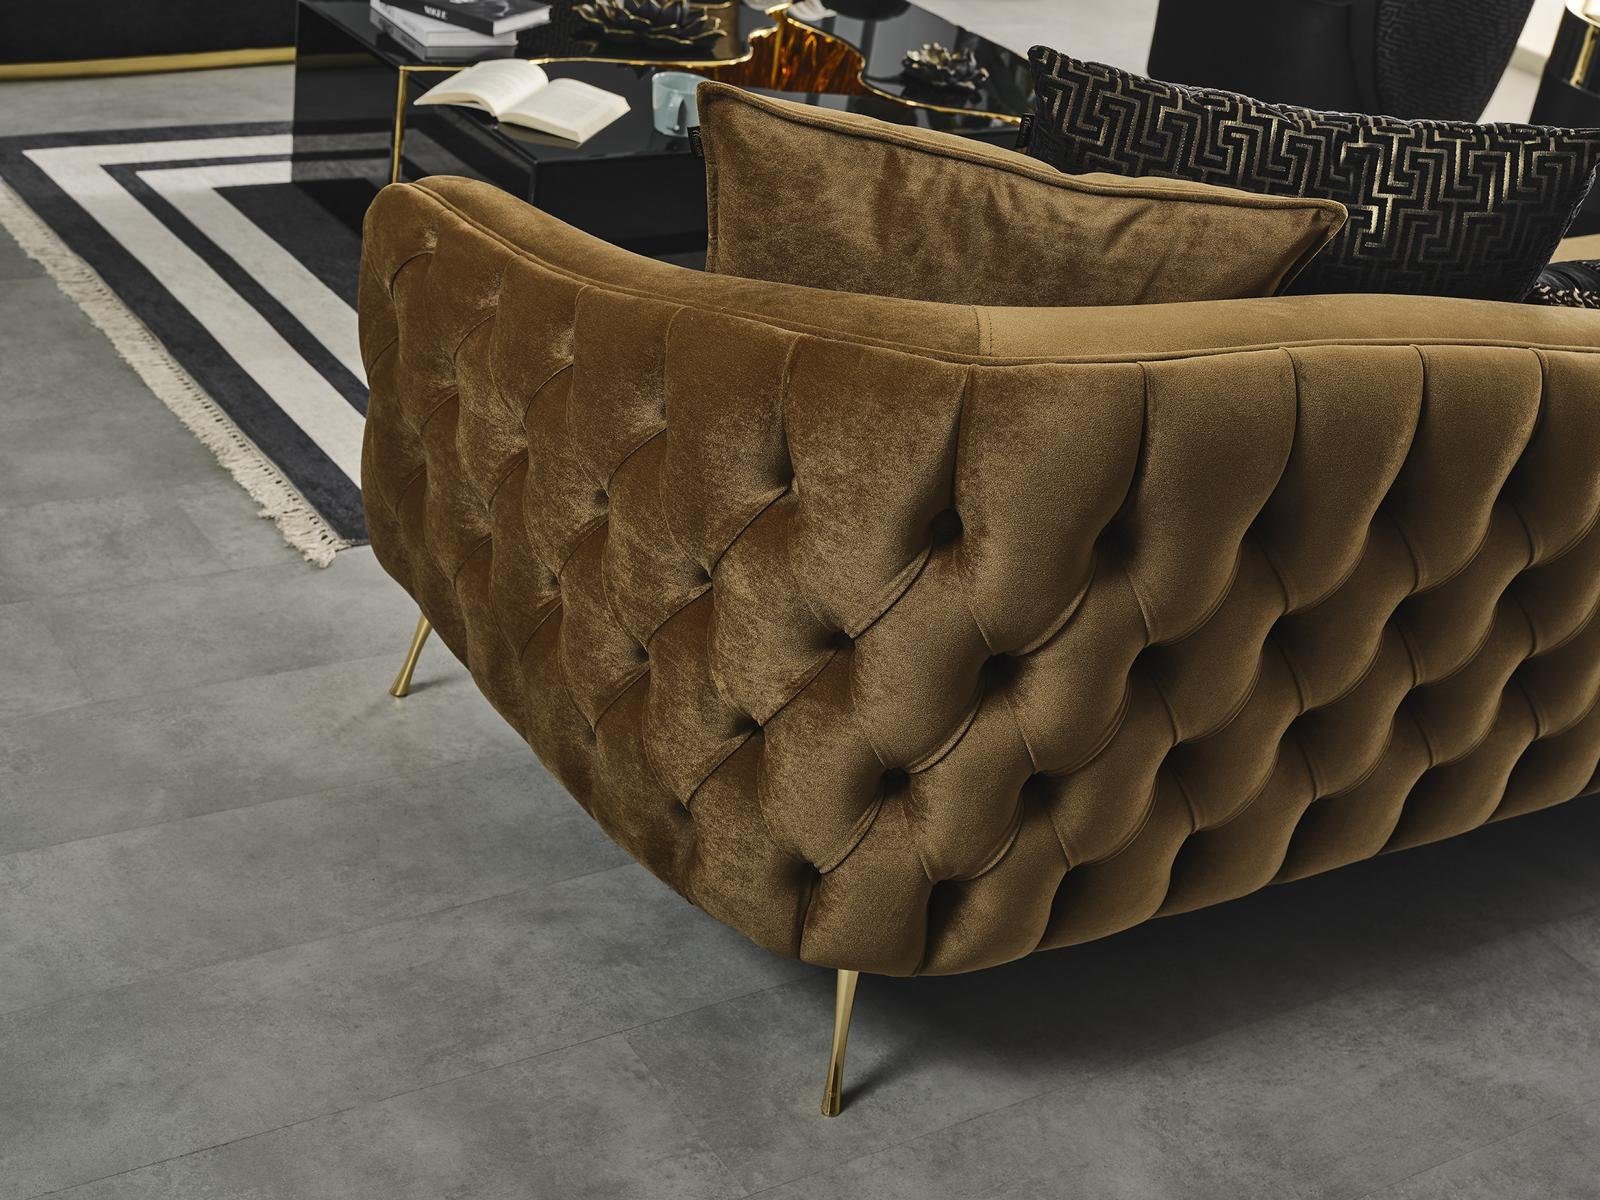 Luxus JVmoebel Design Textil Modern 3-Sitzer Wohnzimmer Couch Sitzer Braun 3 Sofa Neu